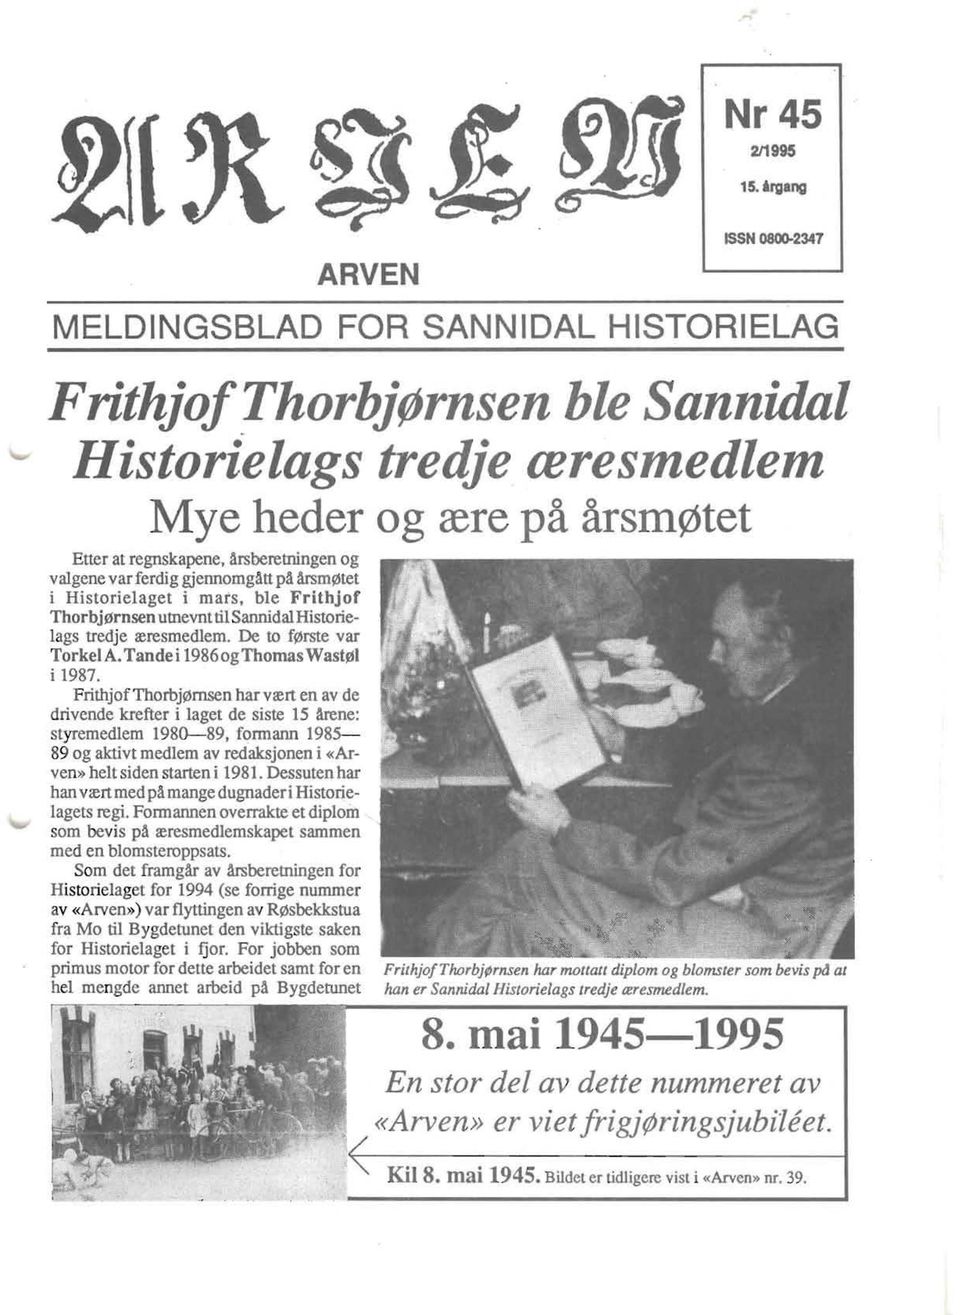 . Arsm~tet i Historielaget i mats, ble Frithjof Thorbj~rnsen utnevnt tilsannidal Historielags tredje reresmedlem. De to f~rste var Torkel A. Tande i 1986 ogthomas Wast~l i 1987.